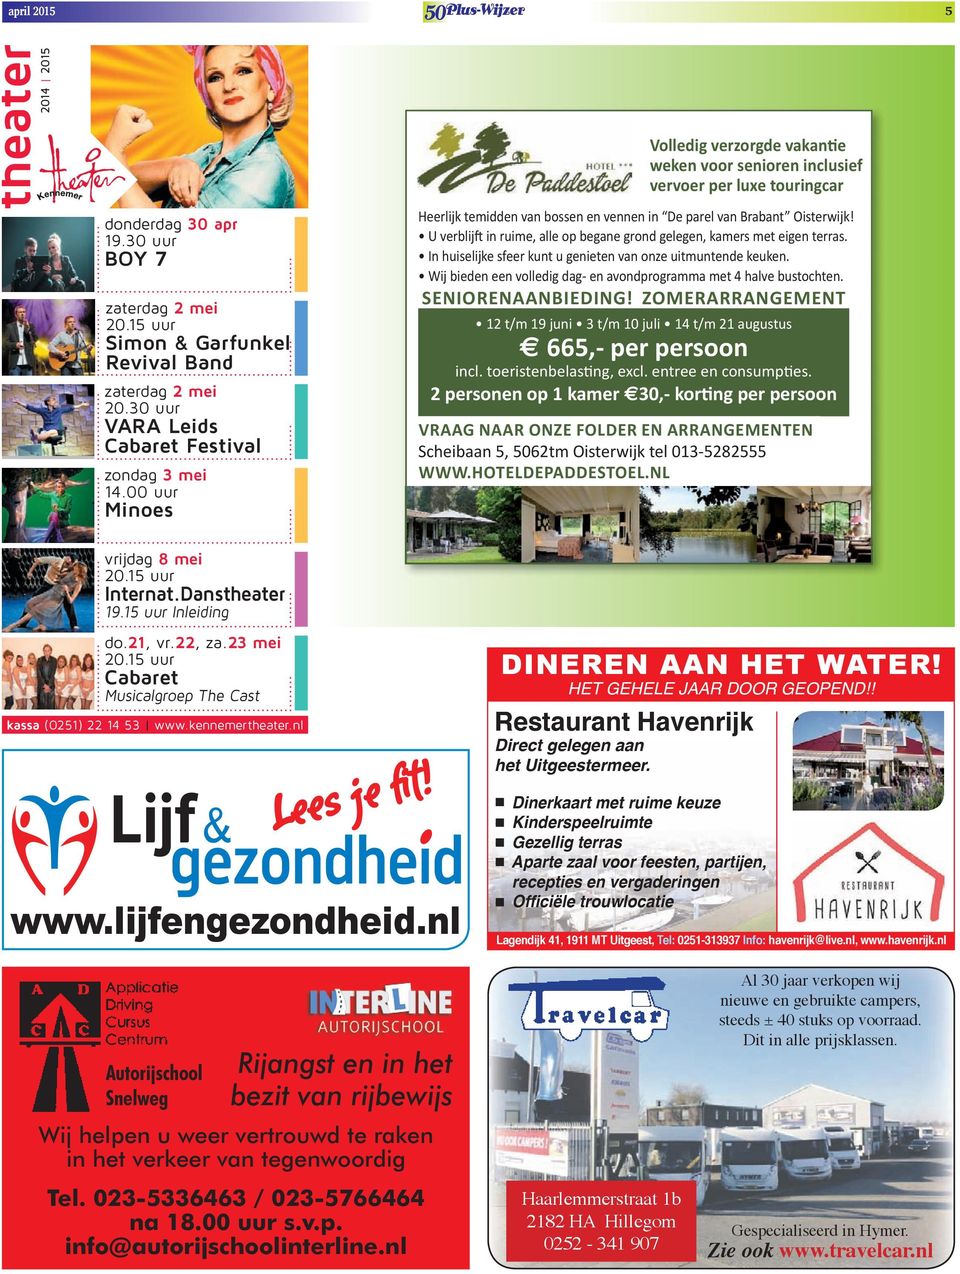 Voor senioren Voor senioren inclusief VerVoer per luxe touringcar Heerlijk temidden van bossen en vennen in De parel van Brabant Oisterwijk!